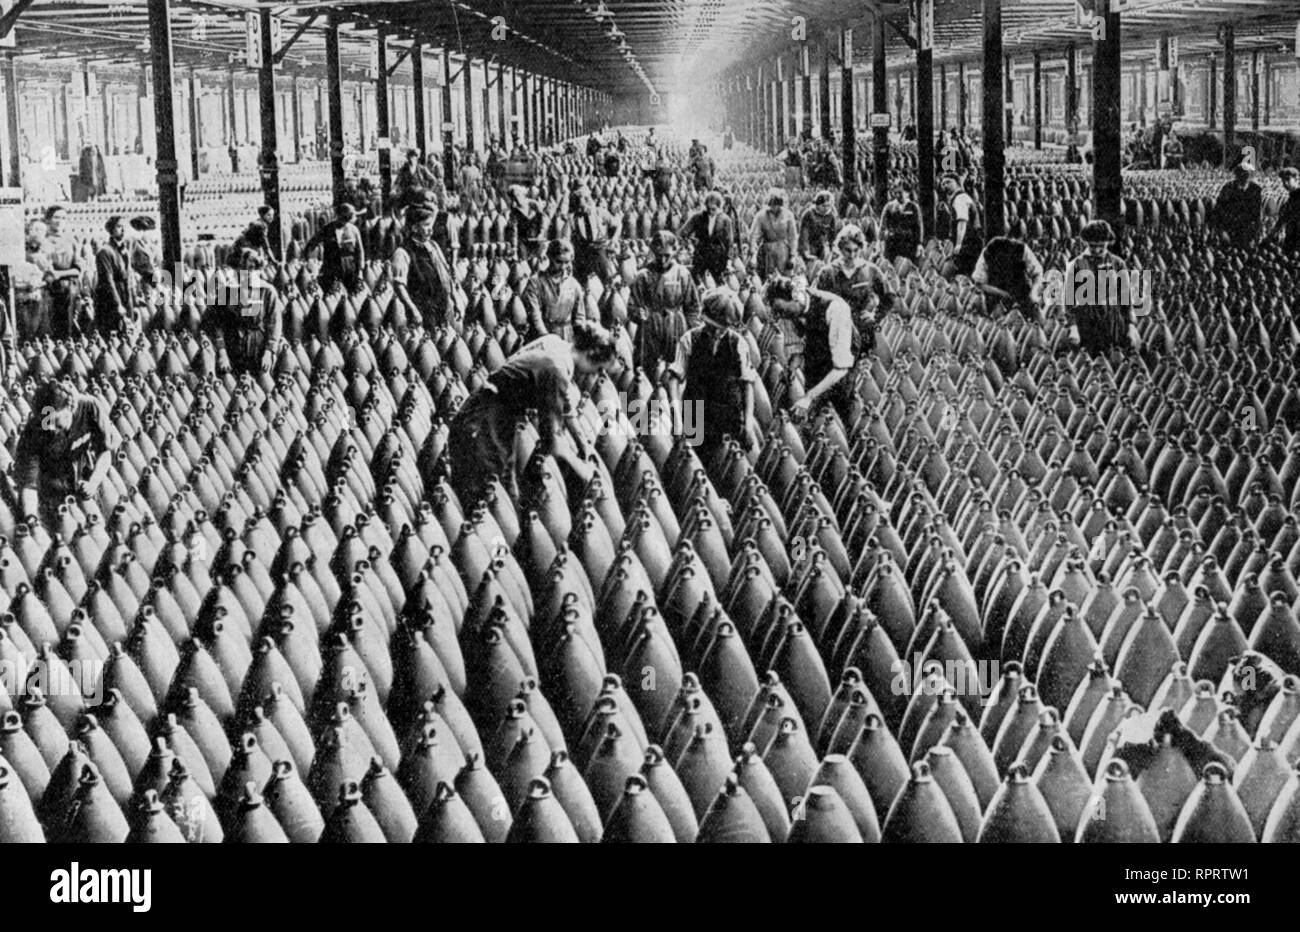 Szene in einer Kriegsmunition Fabrik. Munitionettes waren britische Frauen, die während des Ersten Weltkriegs in Munitionfabriken beschäftigt waren. National Shell Filling Factory No. 6, Chilwell, Nottinghamshire, 1917. Stockfoto